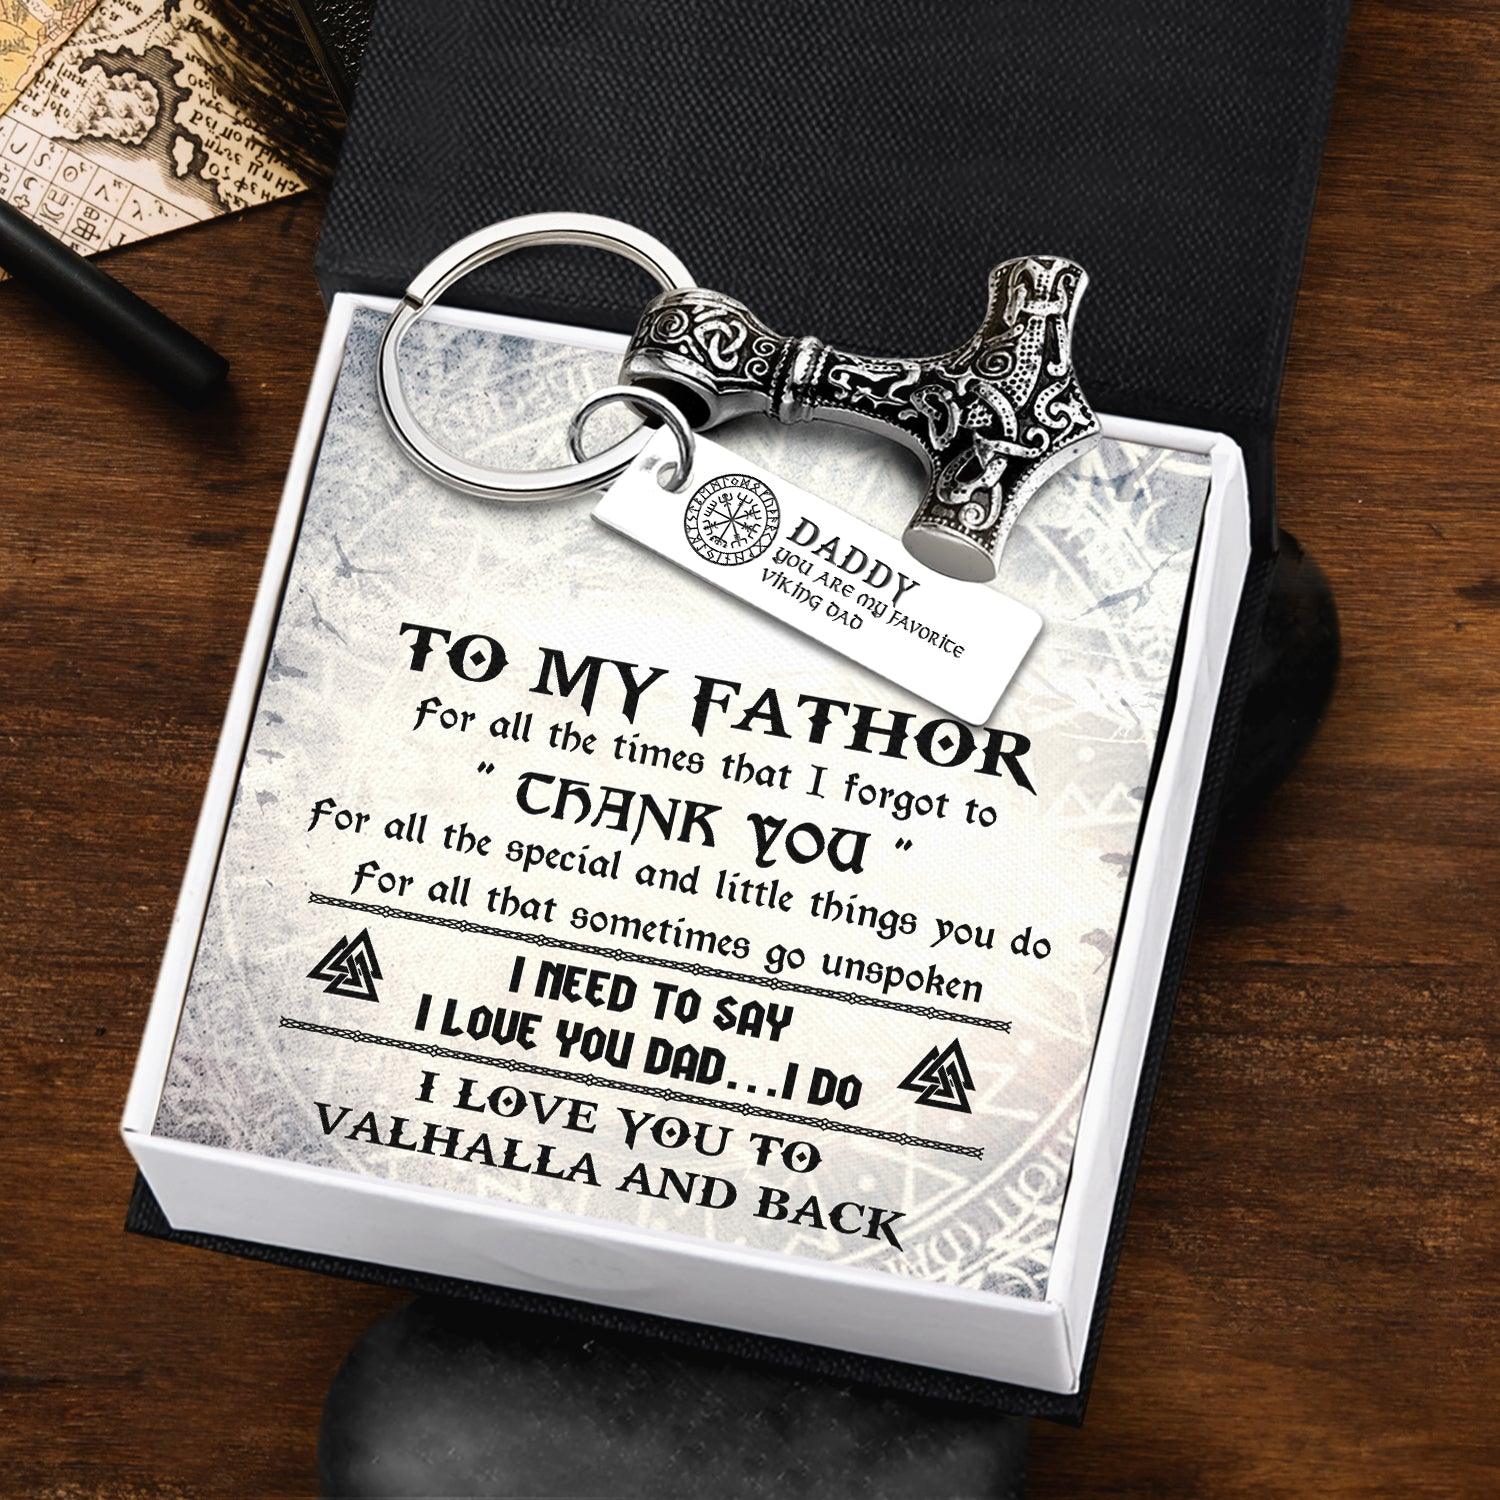 Viking Thor Keychain - Viking - To My Fathor - I Love You To Valhalla & Back - Augkbv18005 - Gifts Holder